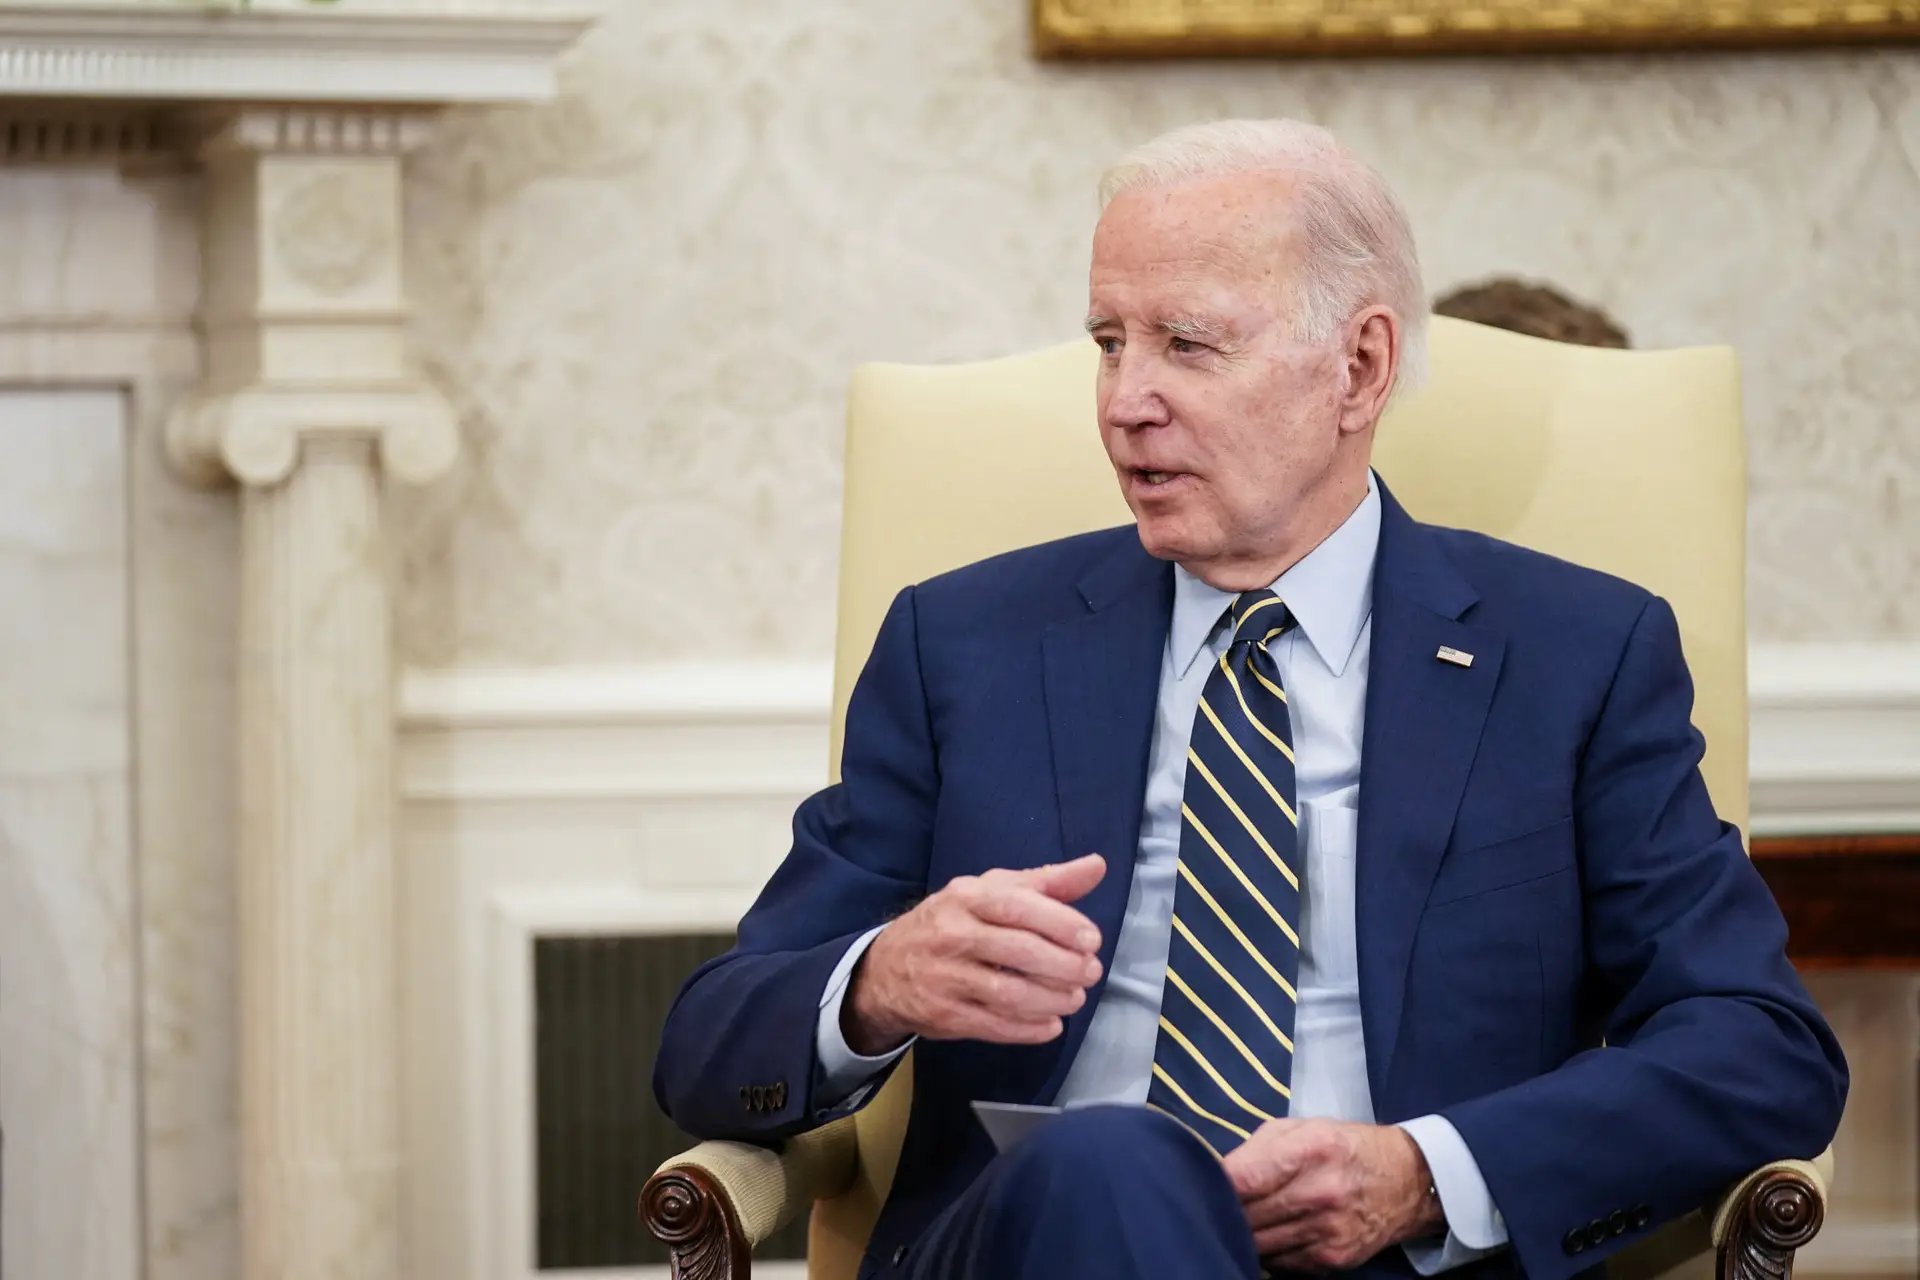 Presidente Carter "pediu-me para fazer o seu elogio" fúnebre, confidencia Biden